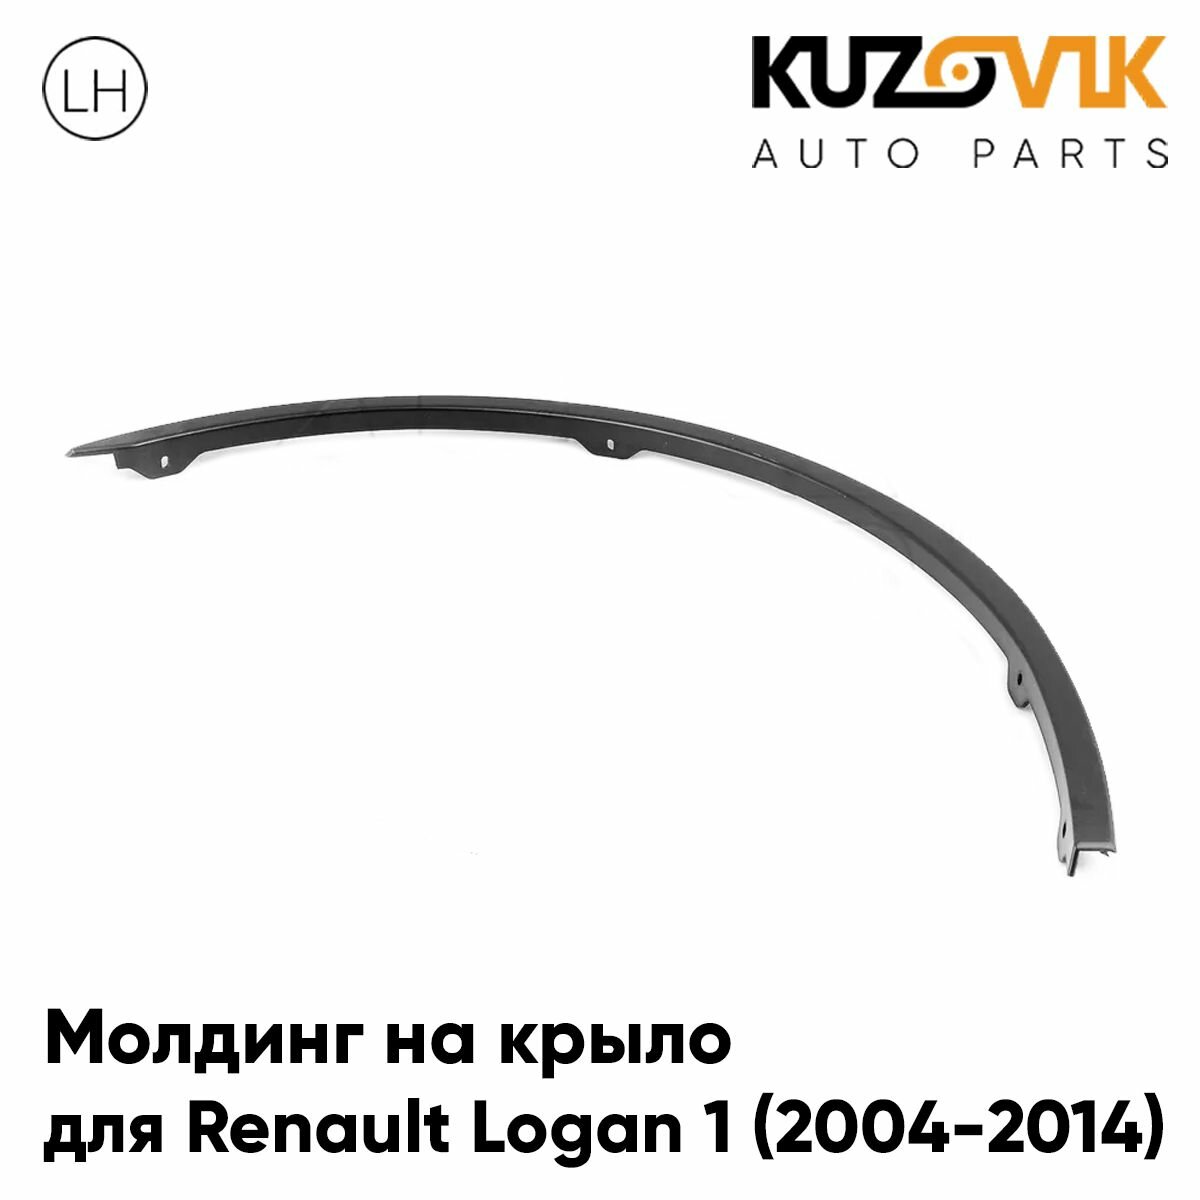 Молдинг арки левого крыла передний для Рено Логан Renault Logan 1 (2004-2014) накладка новая заводское качество